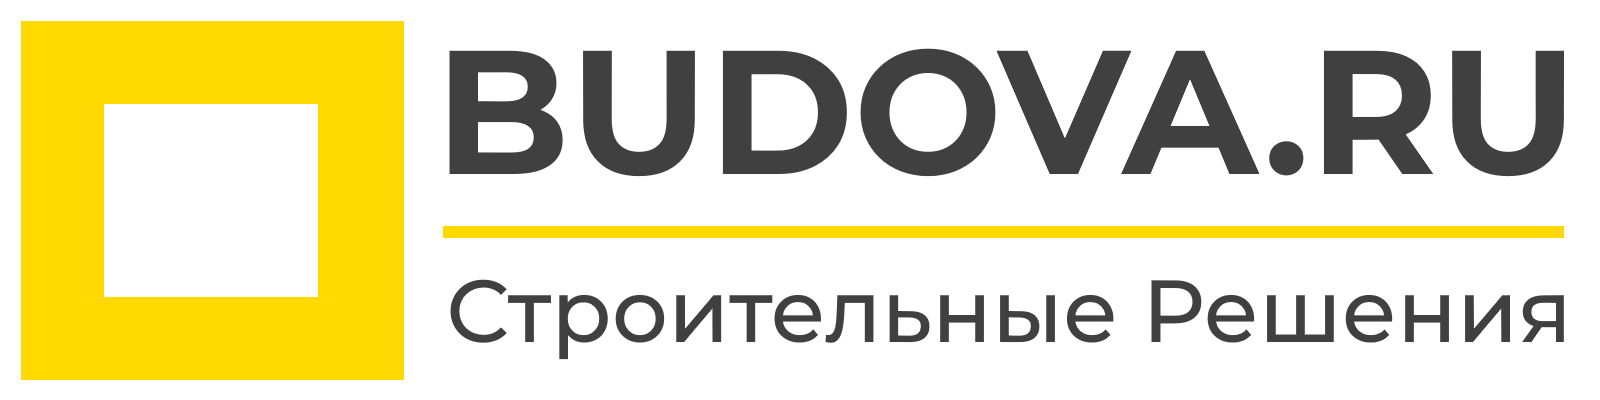 BUDOVA.RU | ООО "Строительные Решения"